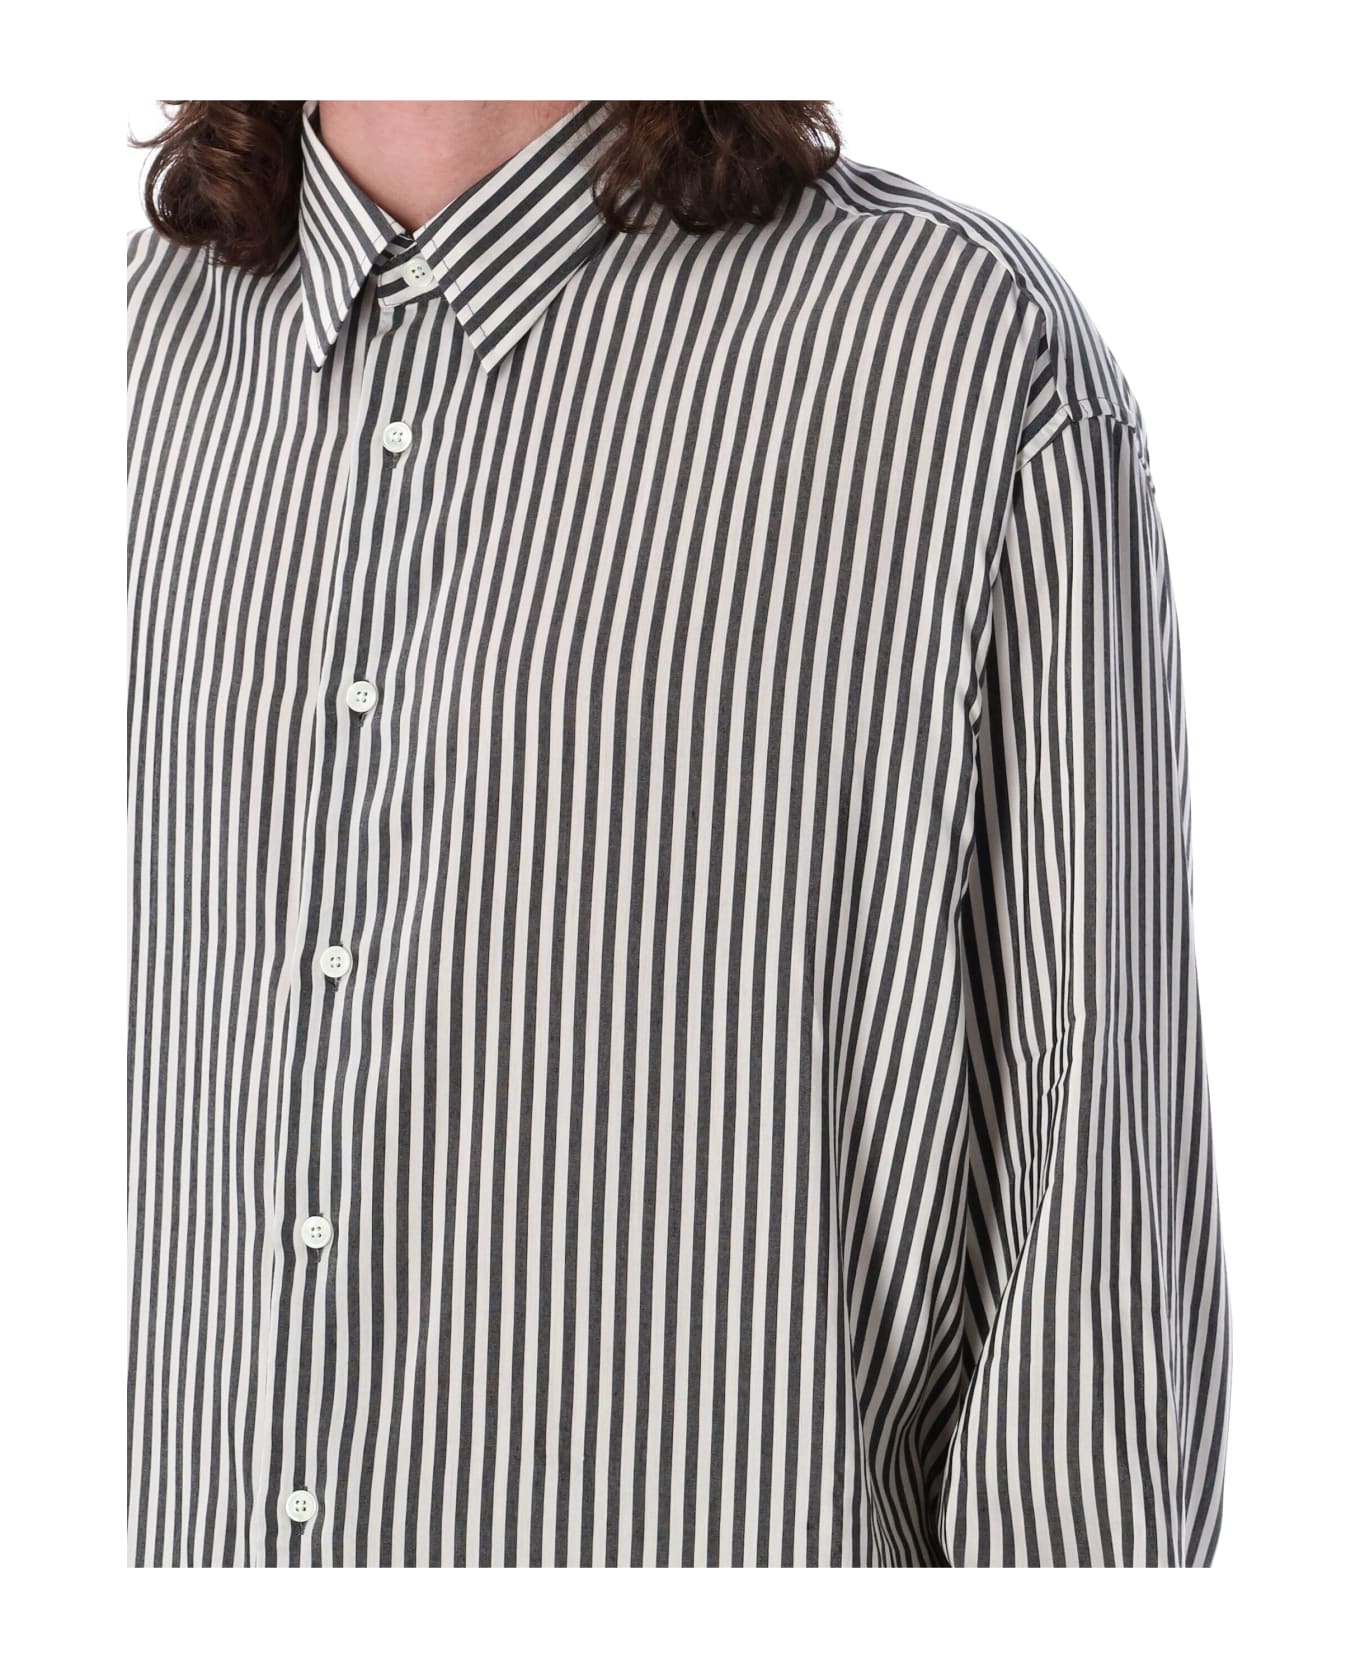 Ami Alexandre Mattiussi Striped Shirt - CHALK/BLACK